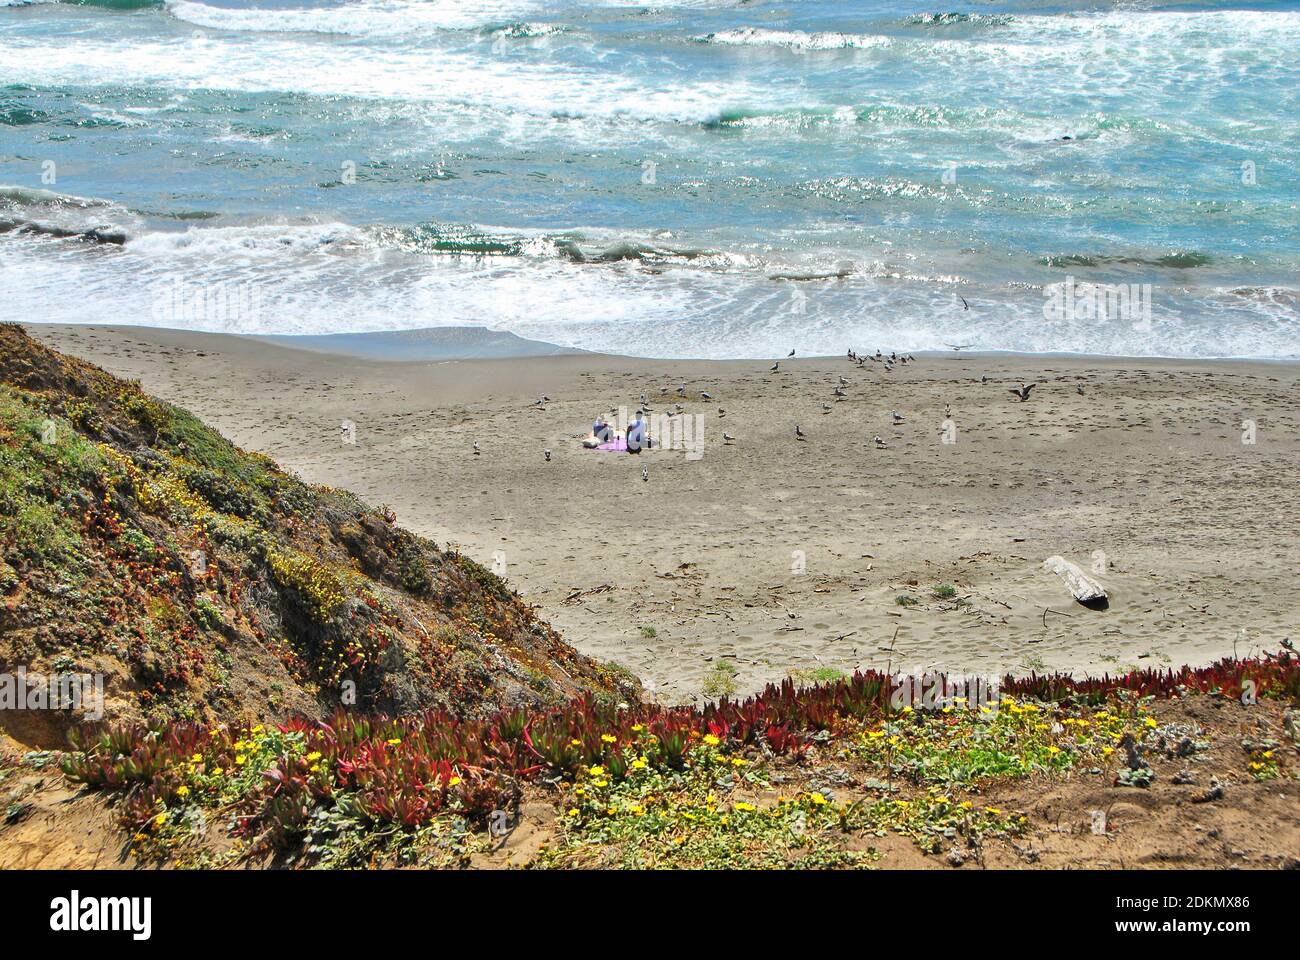 Les falaises couvertes de fleurs sauvages mènent à une plage de sable sur l'océan Pacifique, dans le nord de la Californie aux États-Unis. Banque D'Images